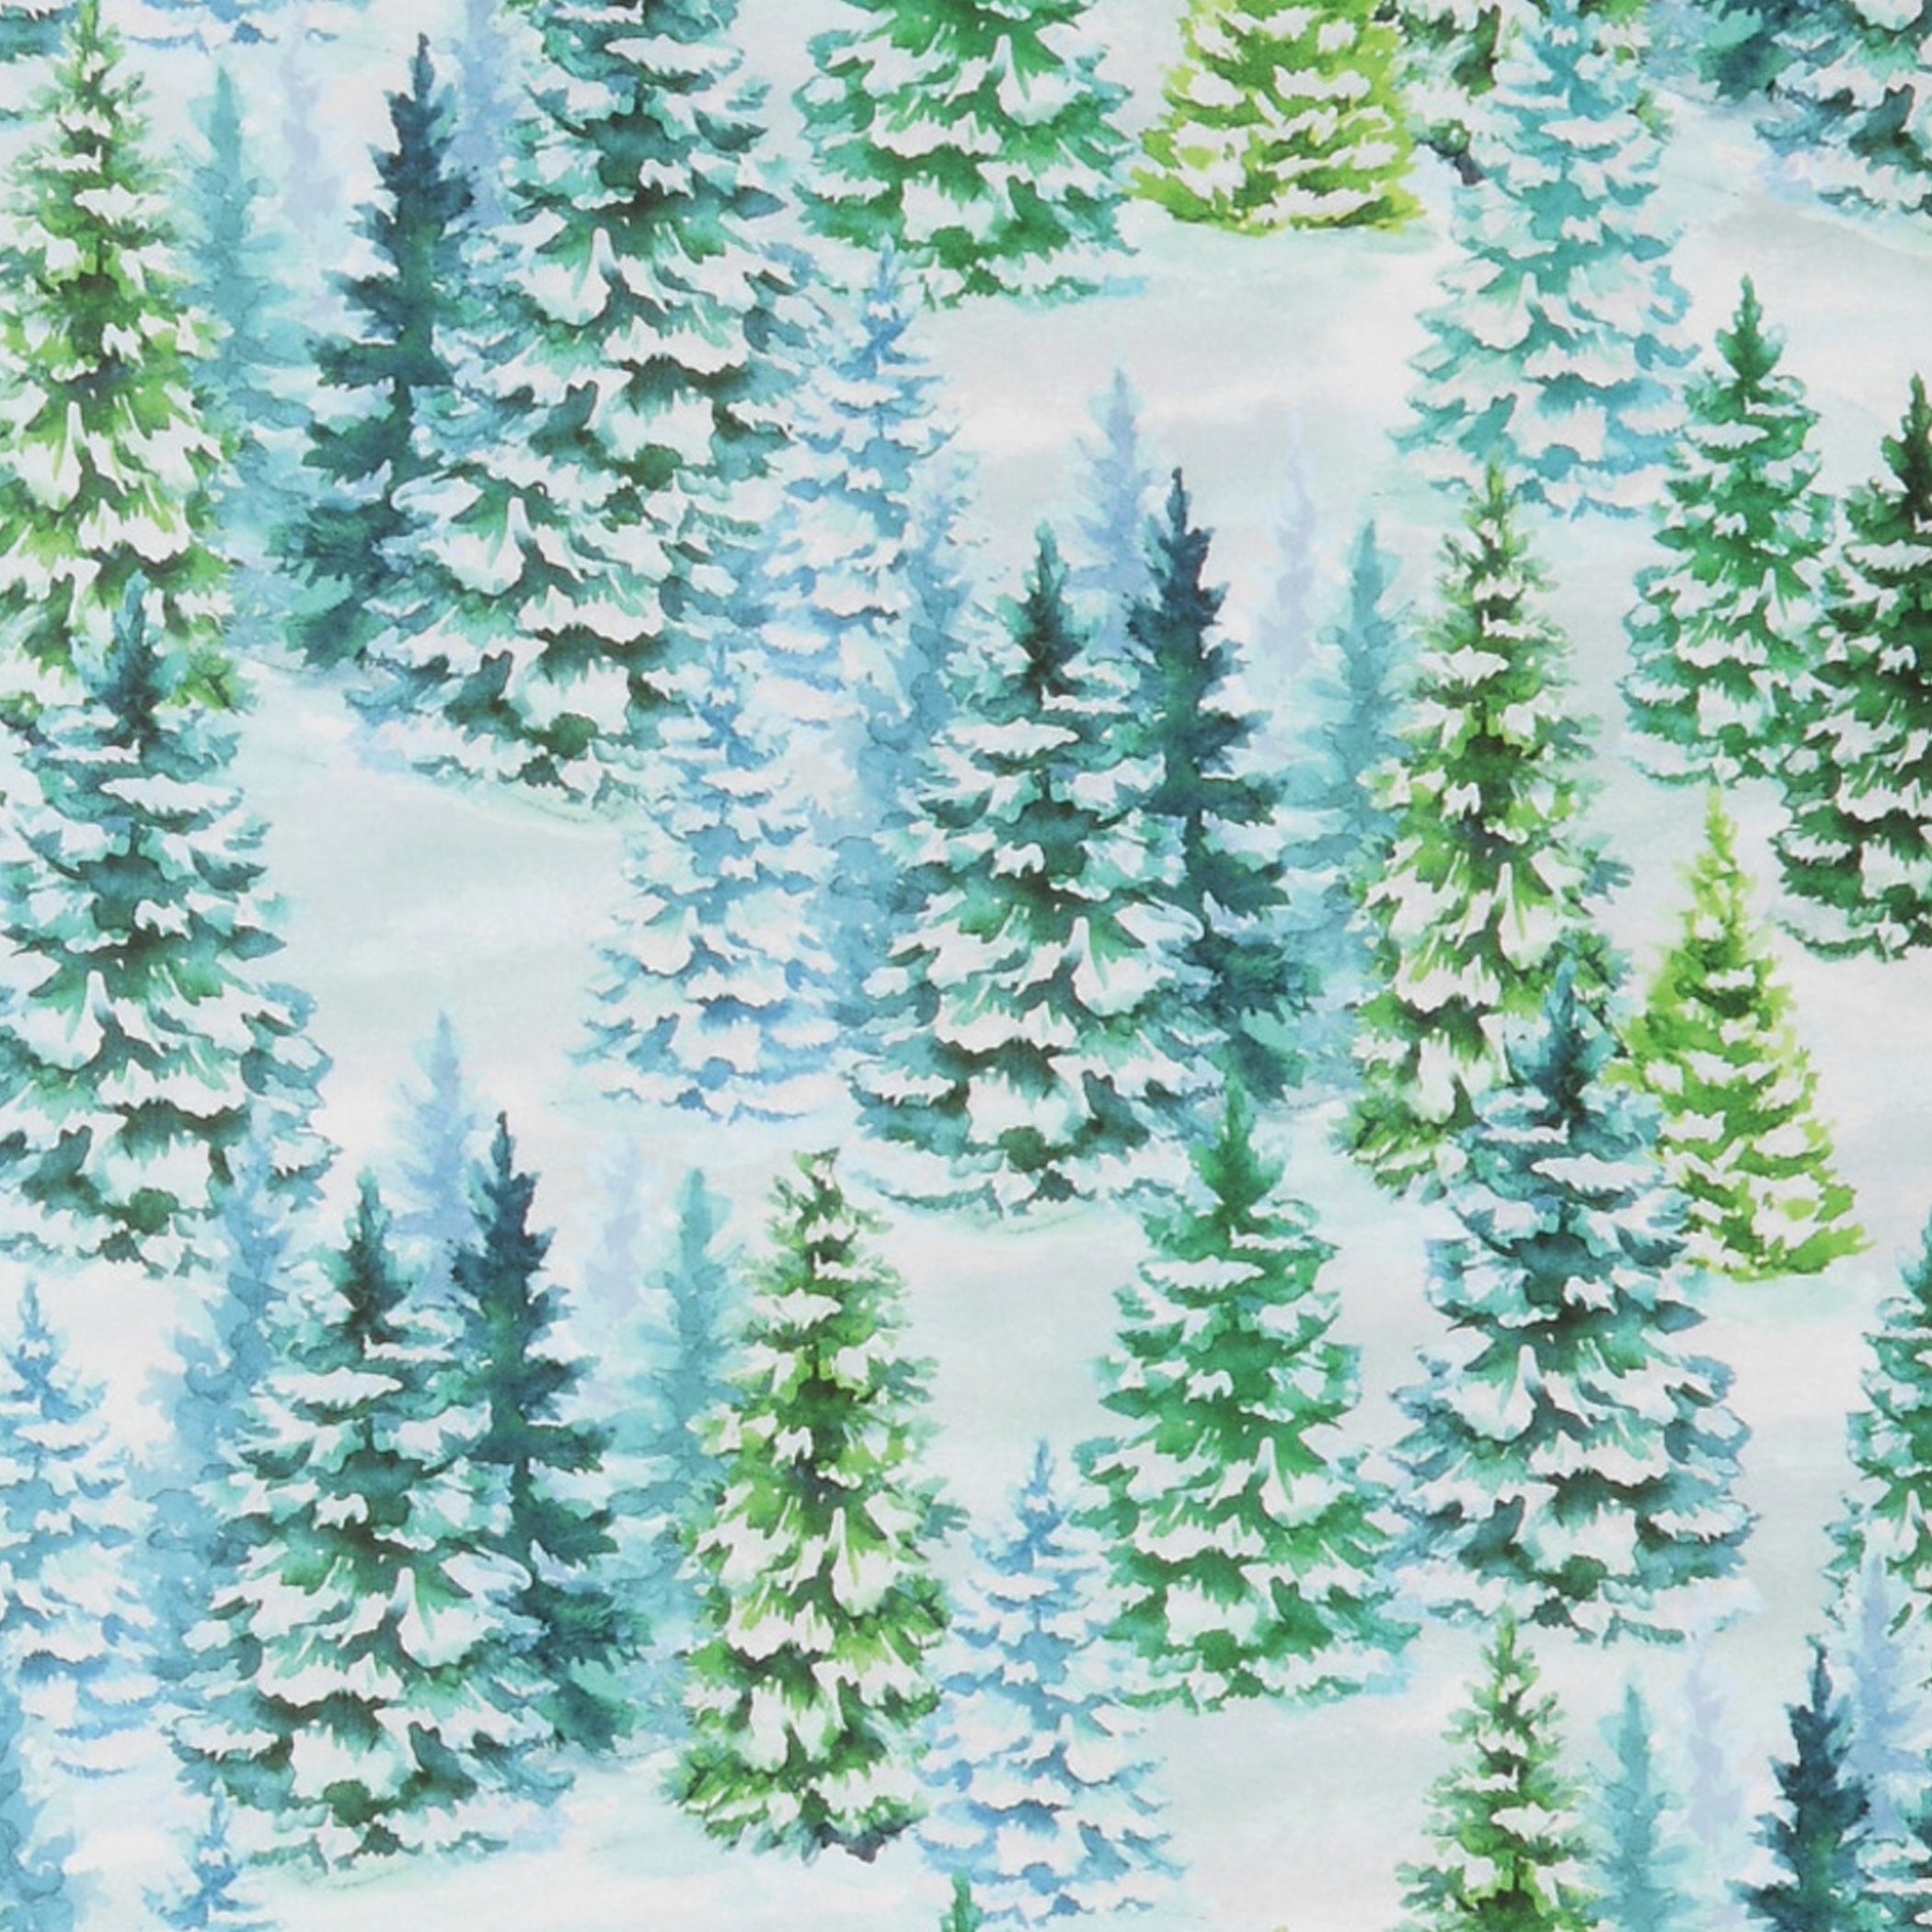 Star Geschenkpapier, Geschenkpapier Tannenbäume im Schnee 70cm x 2m Rolle weiß / grün